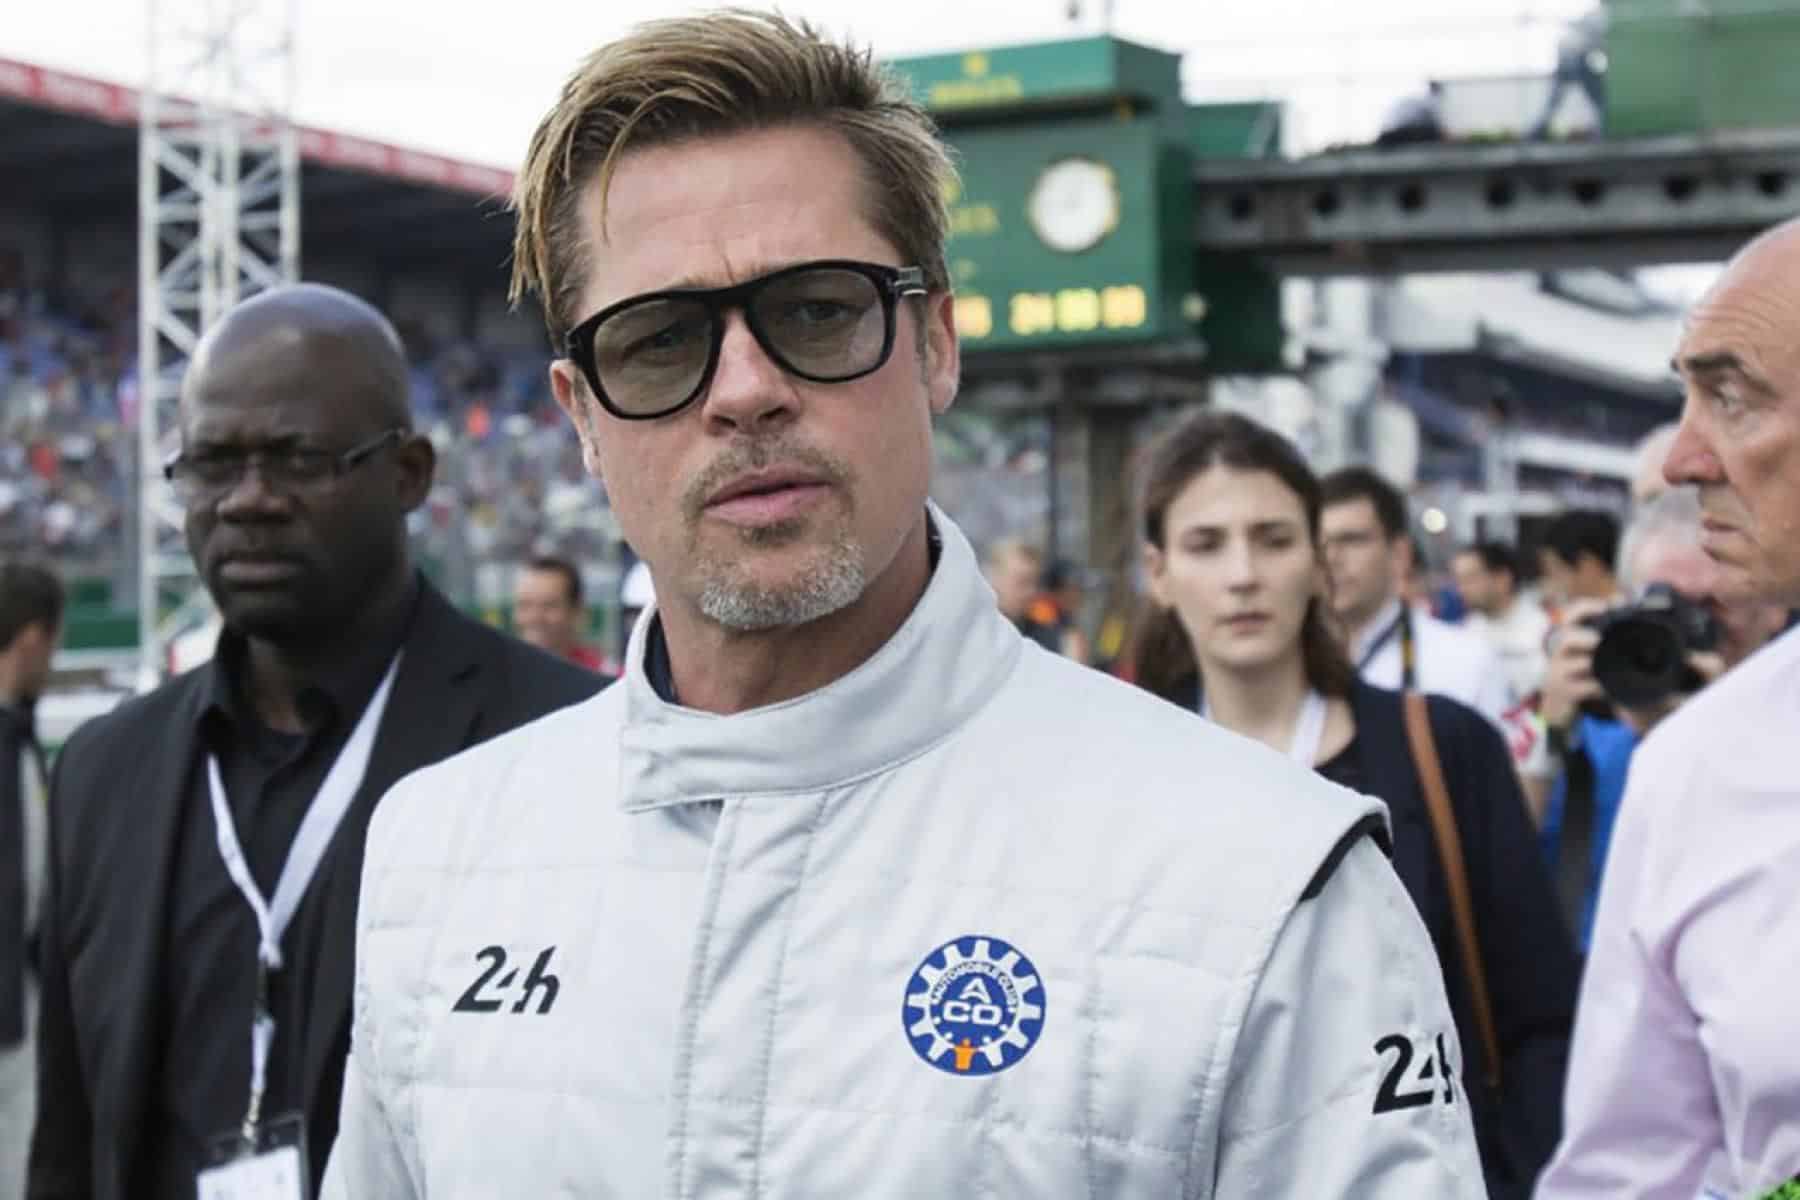 - Brad Pitt F1-film: alles wat we tot nu toe weten (UPDATE)